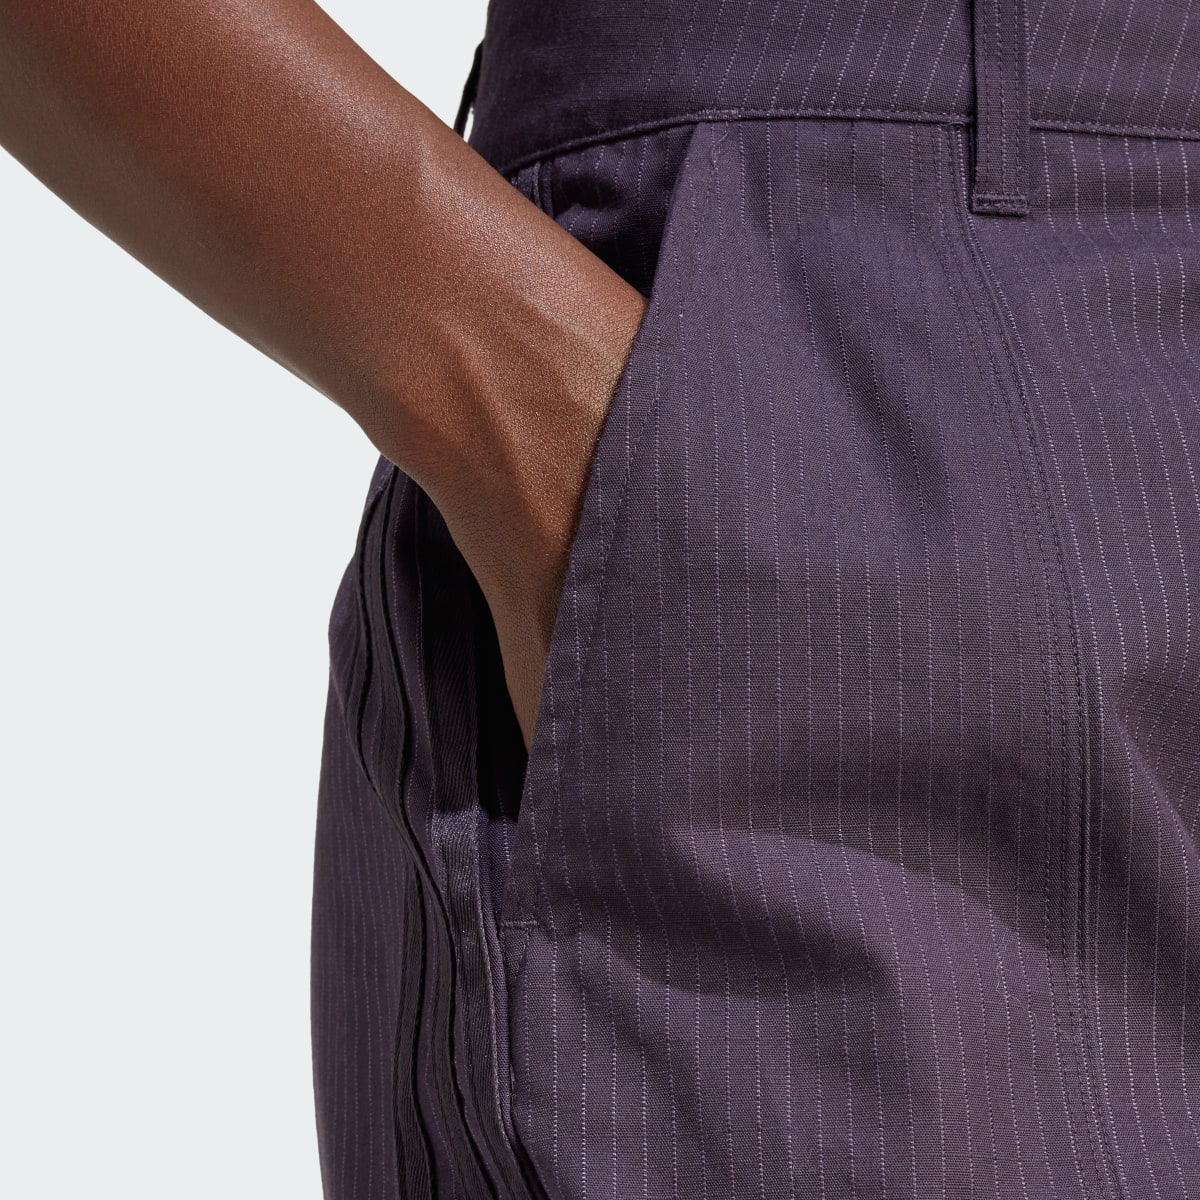 Adidas Premium Essentials Ripstop Trousers. 5